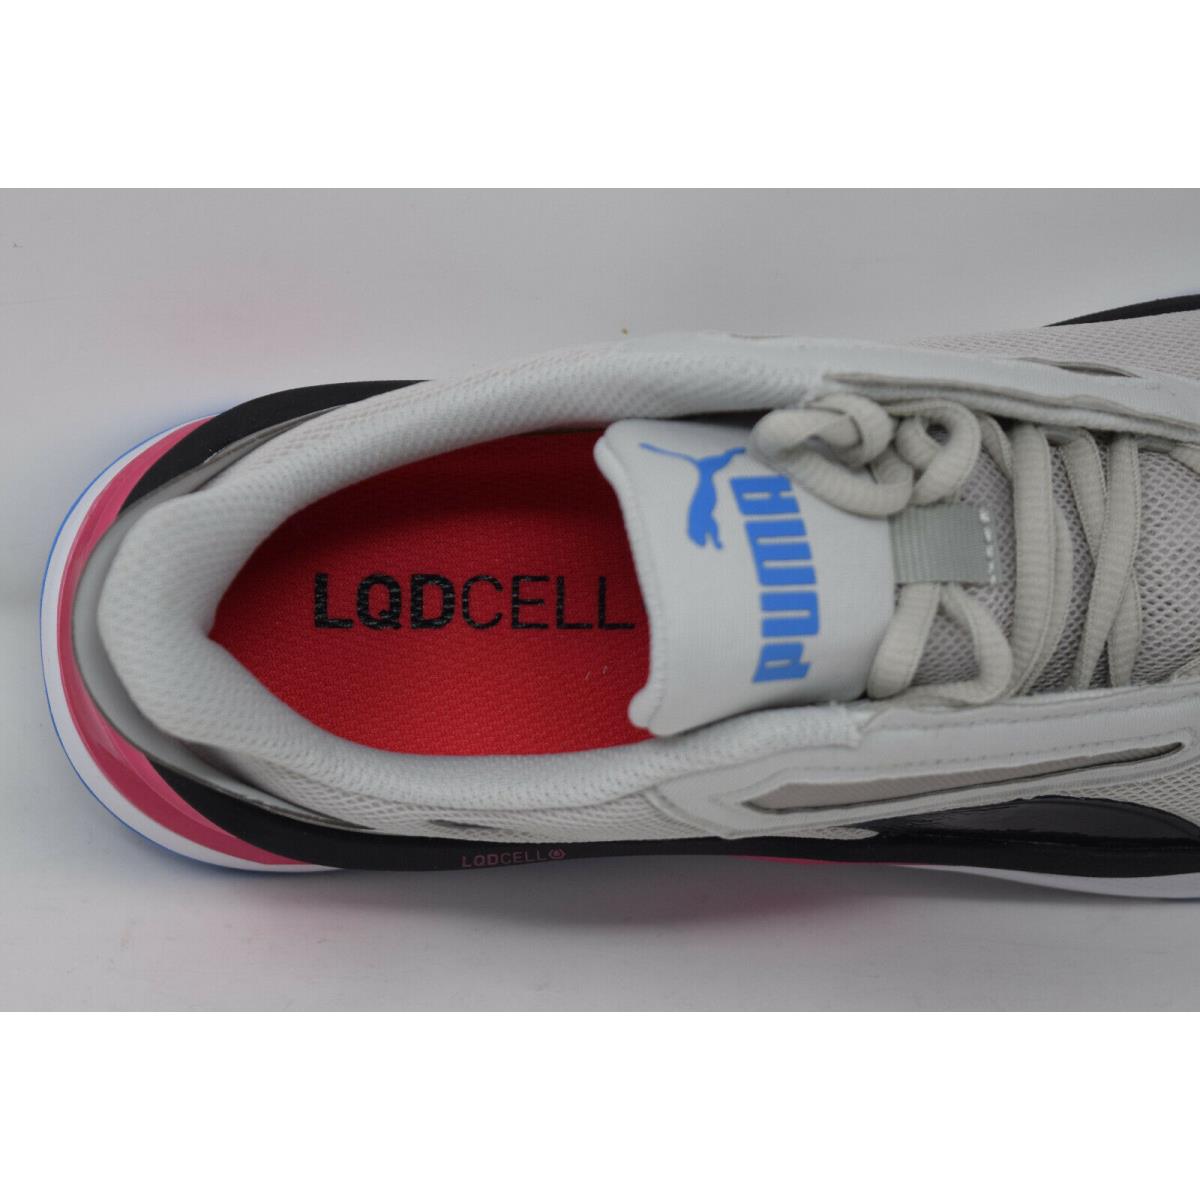 Puma shoes LQDcell - Multicolor 3